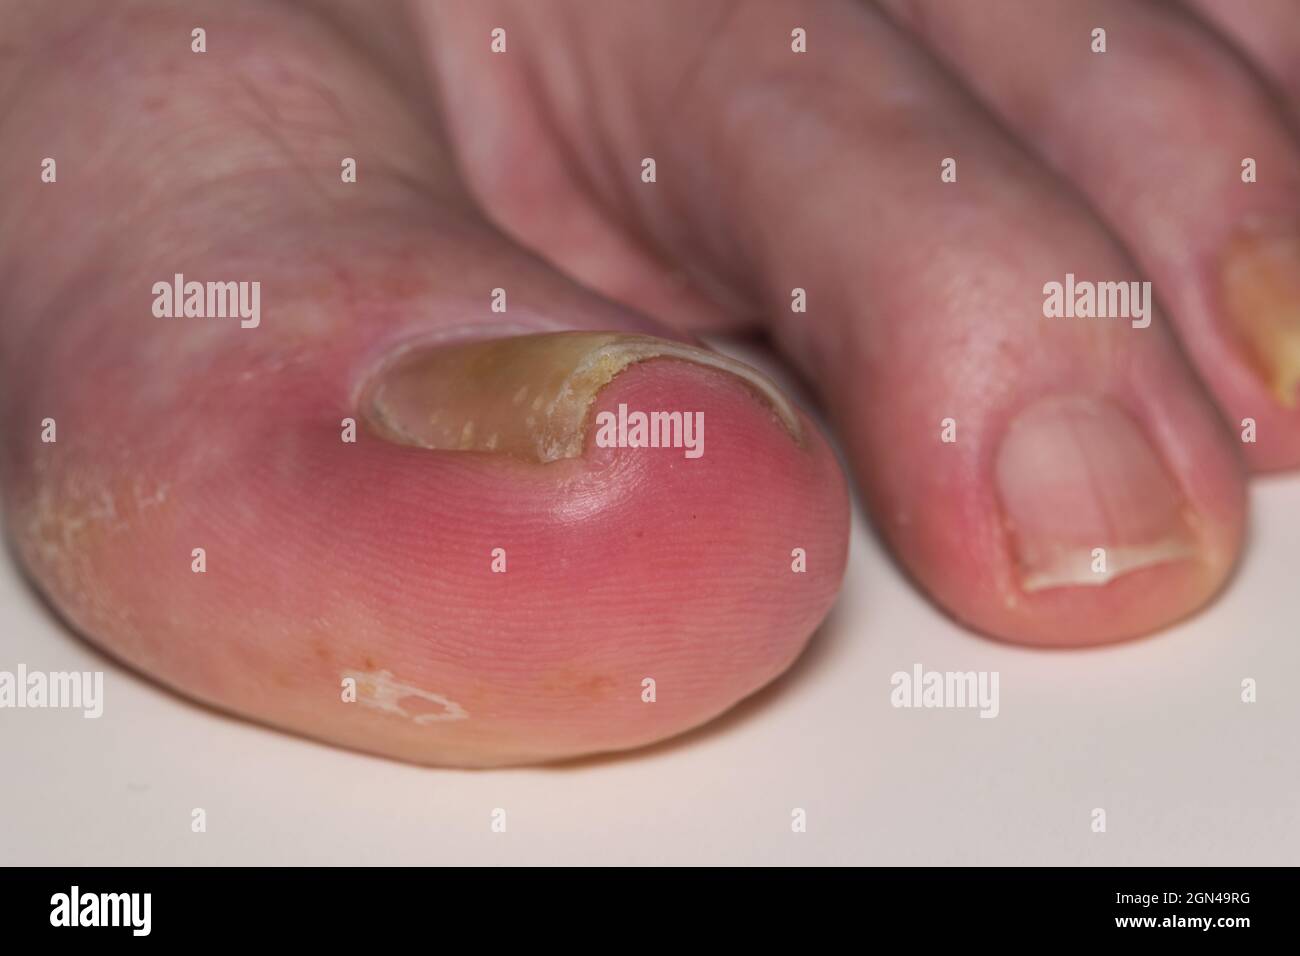 Eingewachsene Zehennagel-Onychocryptose auf kaukasischen Großzehe Hallux, verursacht durch Pilzinfektion Tinea unguium. Makro-abgewinkelte Ansicht mit kleineren Ziffern sichtbar. Stockfoto